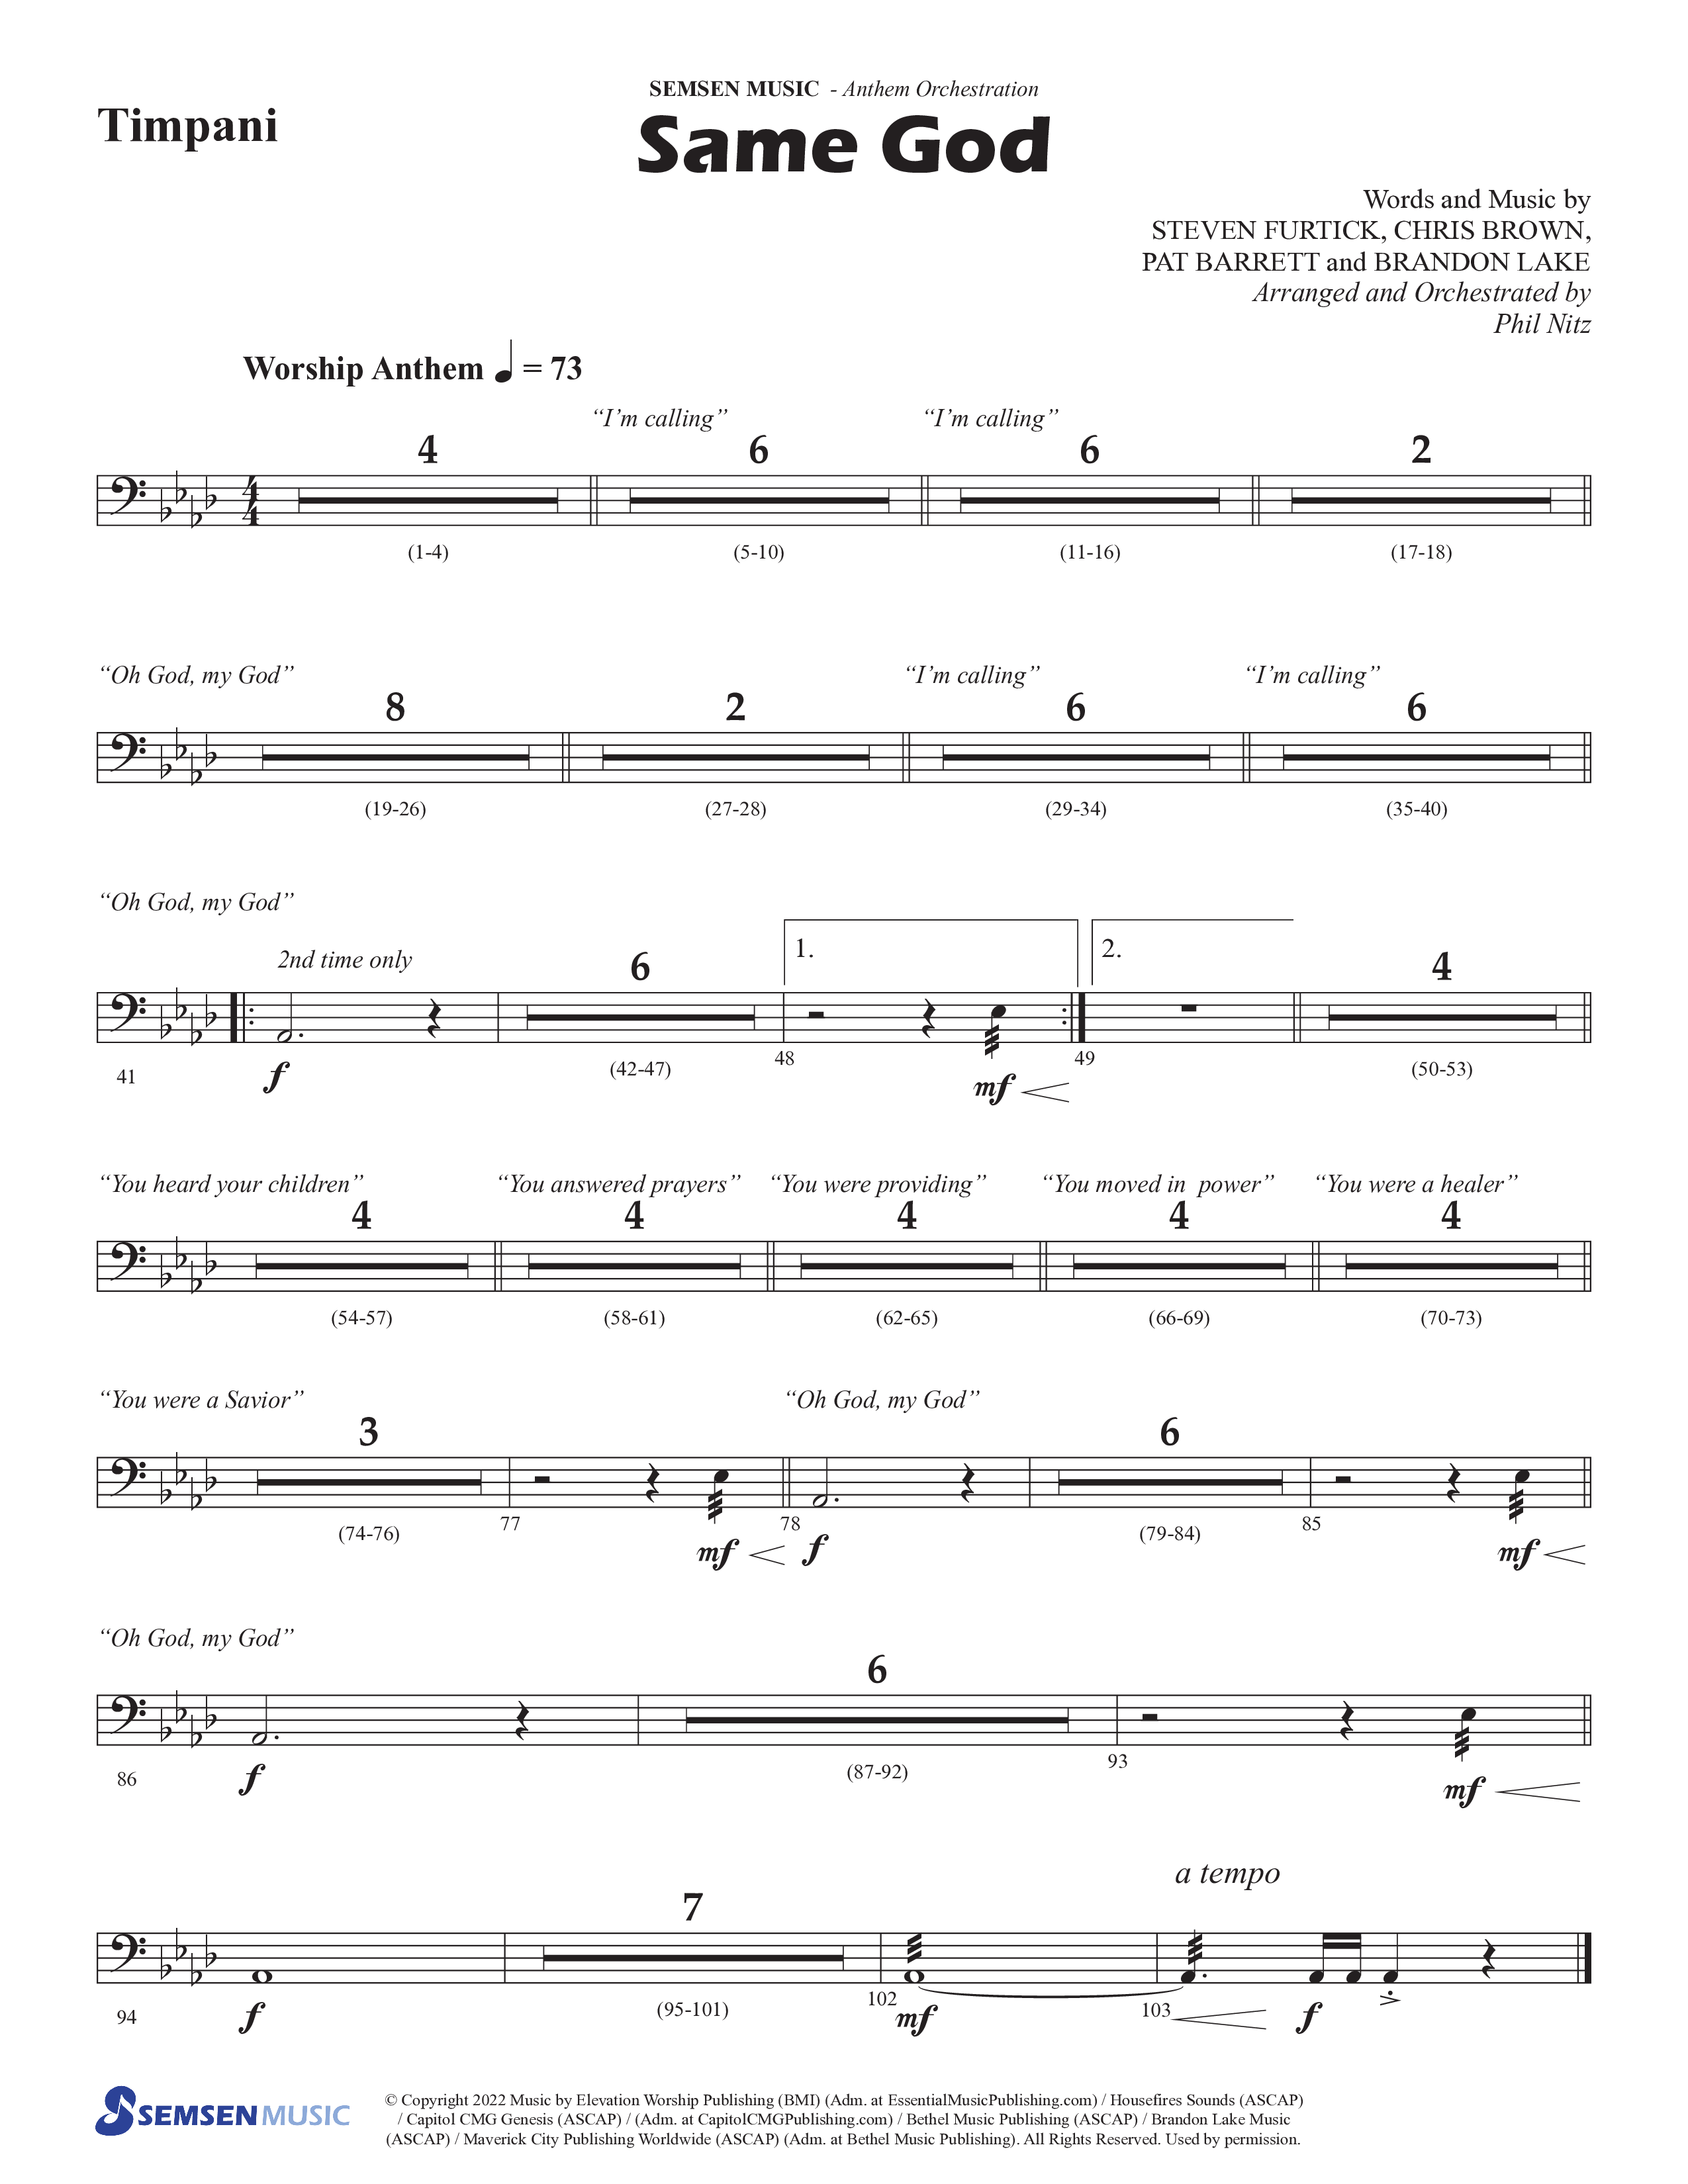 Same God (Choral Anthem SATB) Timpani (Semsen Music / Arr. Phil Nitz)